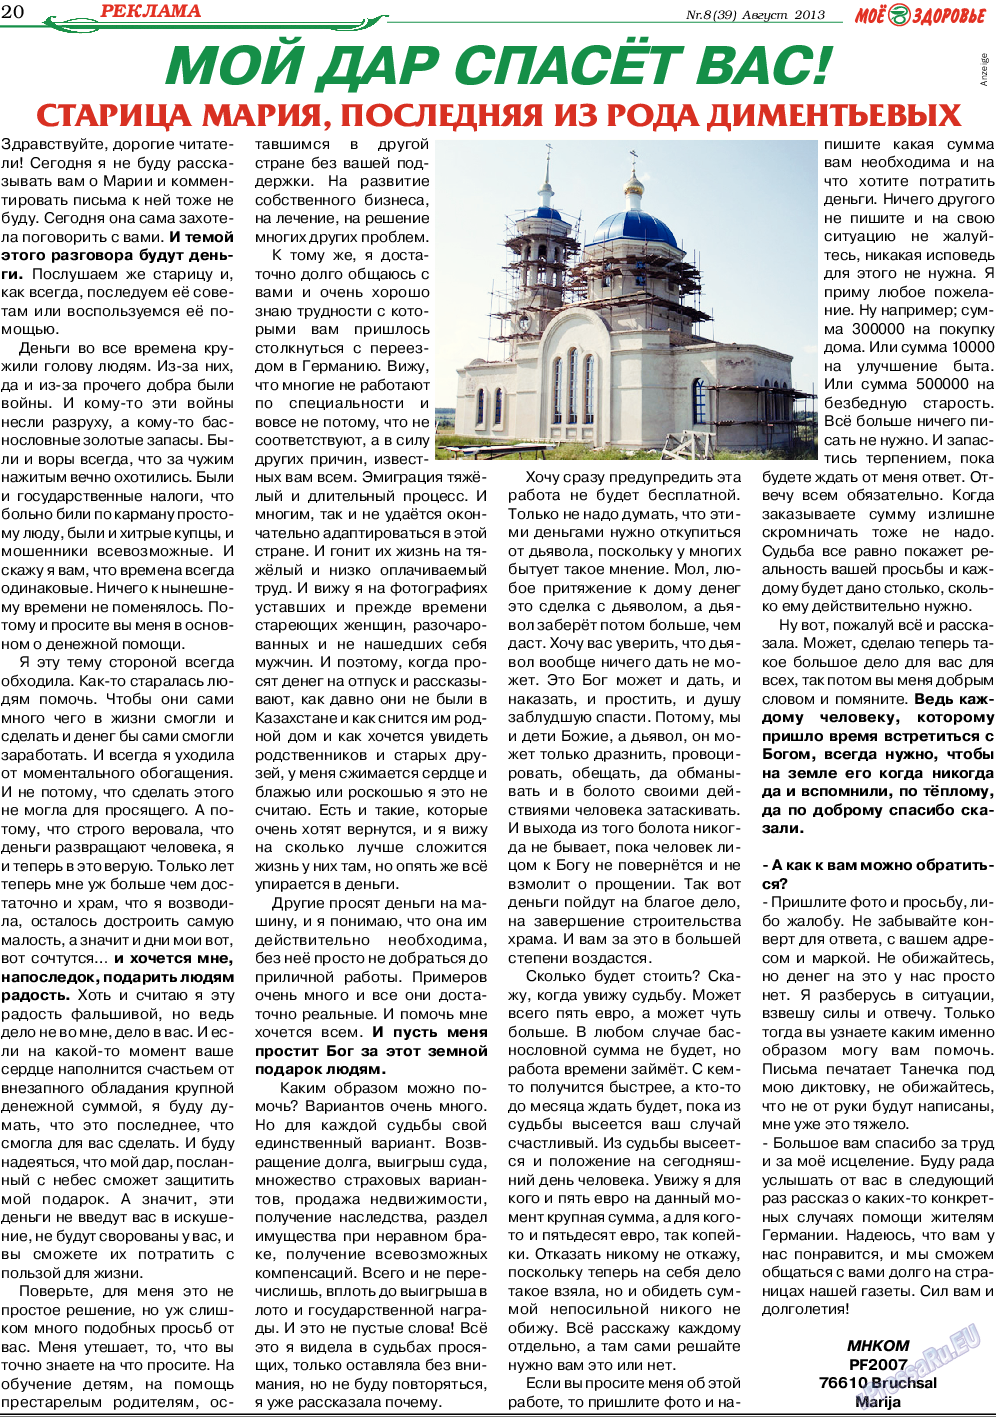 Кругозор, газета. 2013 №8 стр.20